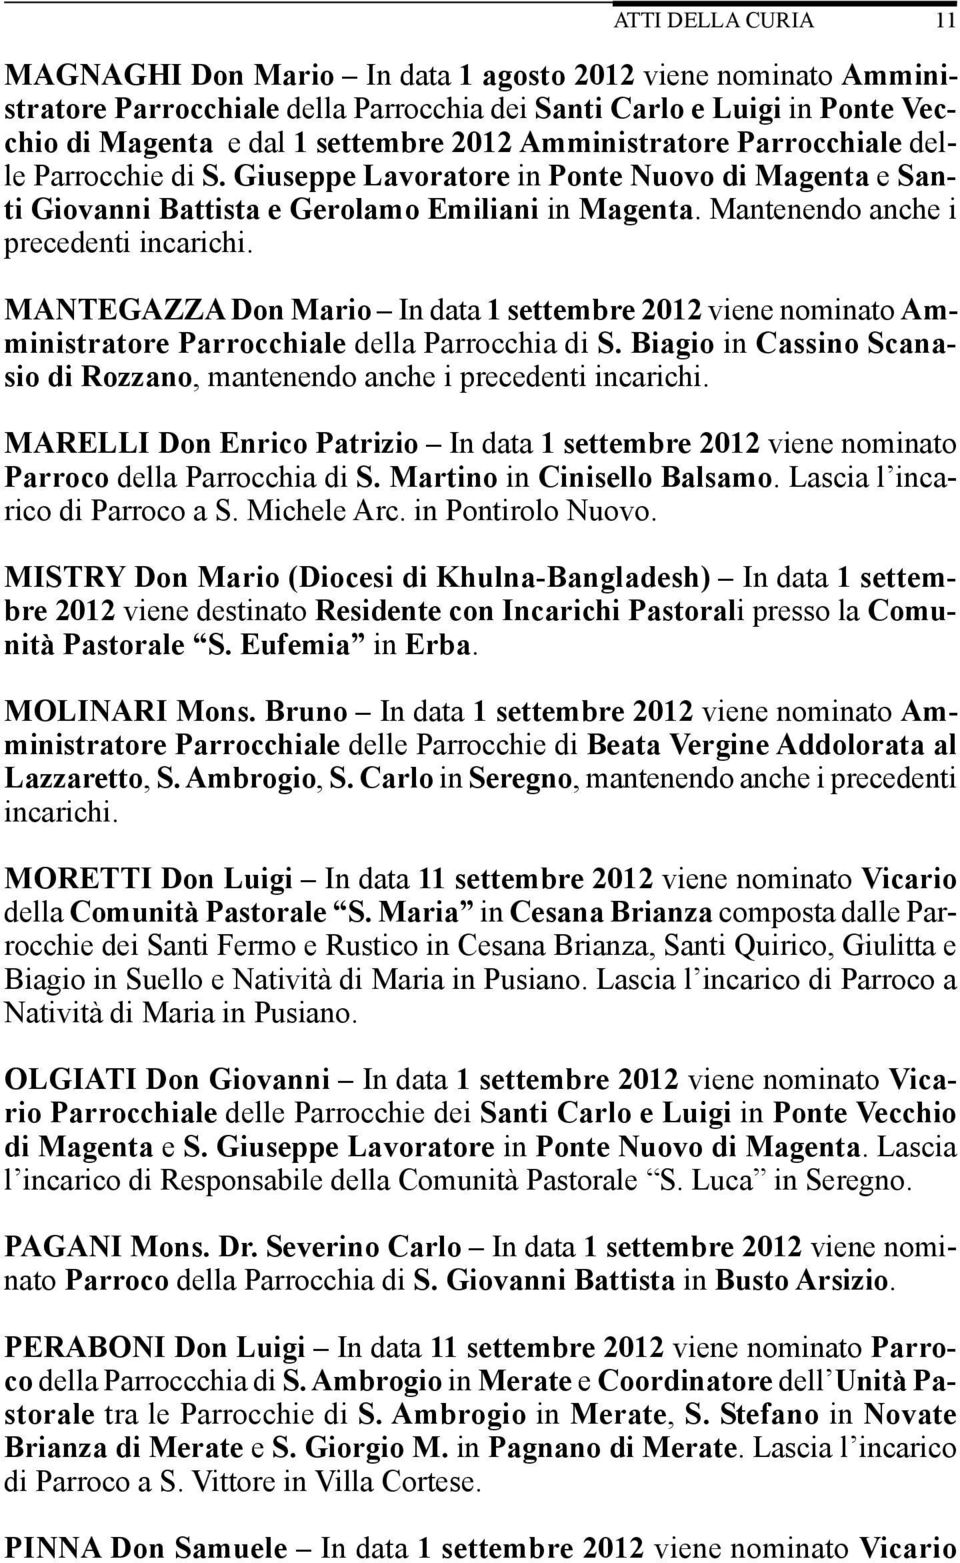 MANTEGAZZA Don Mario In data 1 settembre 2012 viene nominato Amministratore Parrocchiale della Parrocchia di S. Biagio in Cassino Scanasio di Rozzano, mantenendo anche i precedenti incarichi.